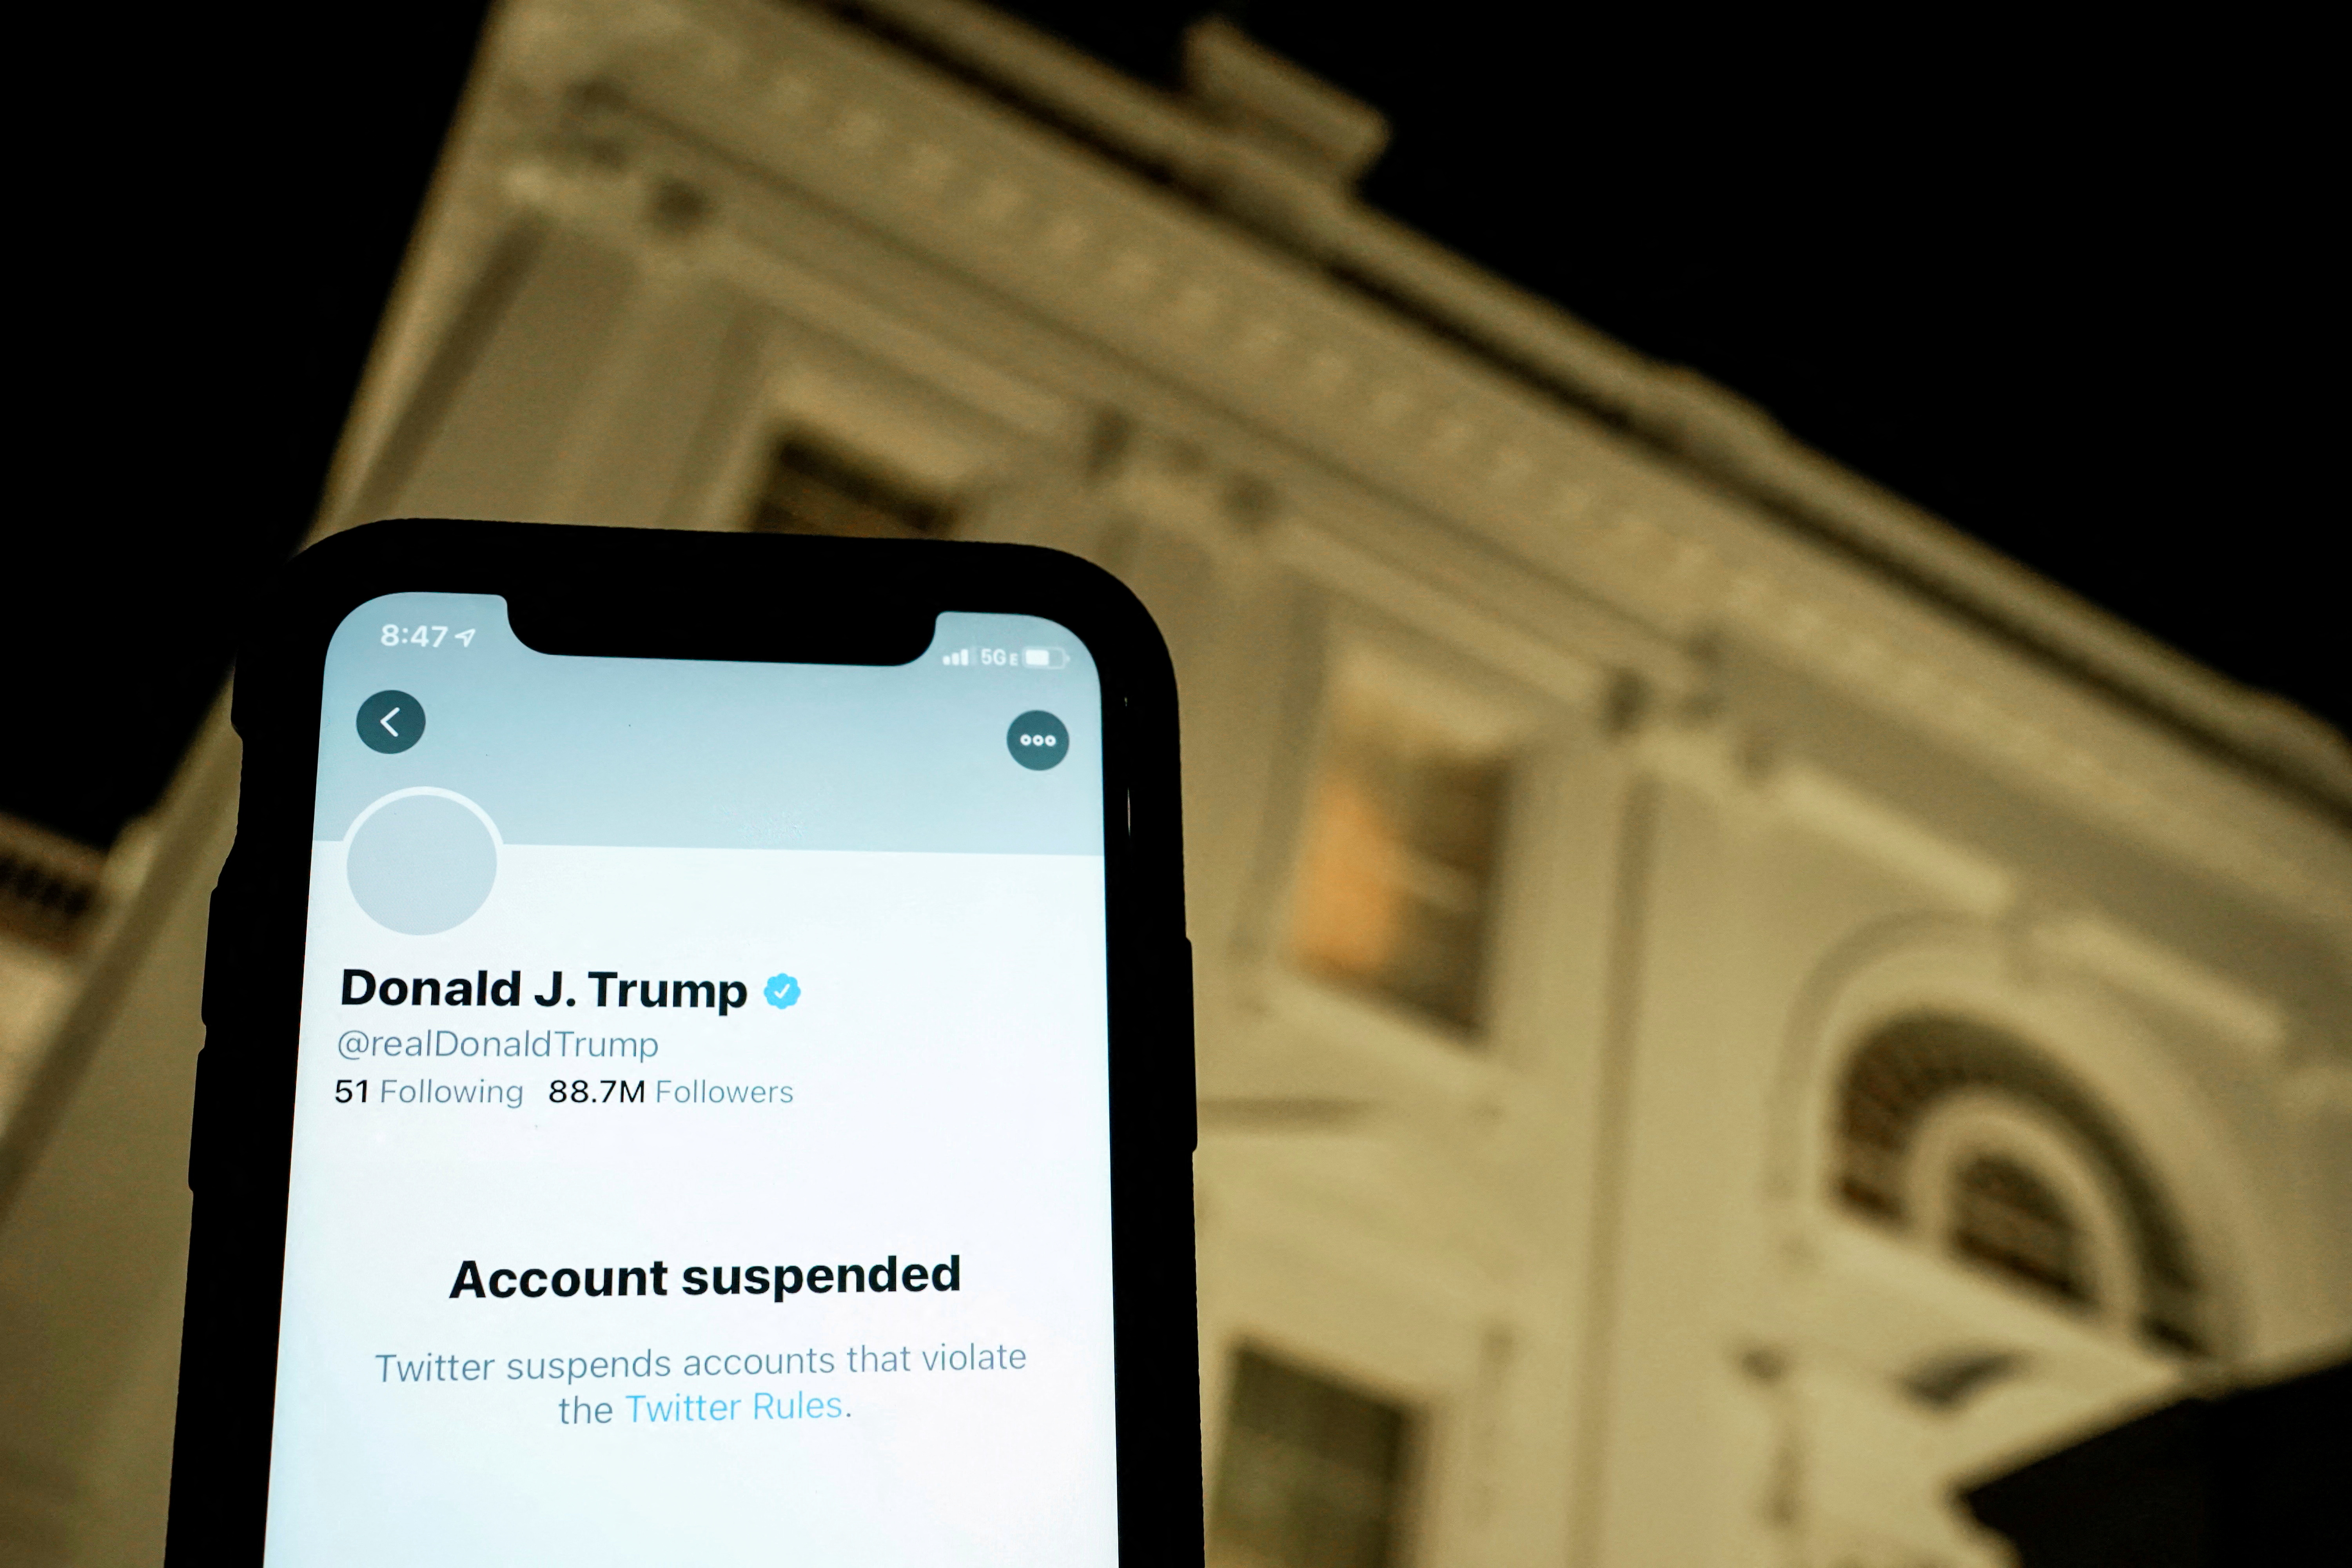 Trump ha dicho que no volverá a Twitter, pero no ha eliminado su cuenta (REUTERS/Joshua Roberts/Illustration/File Photo)